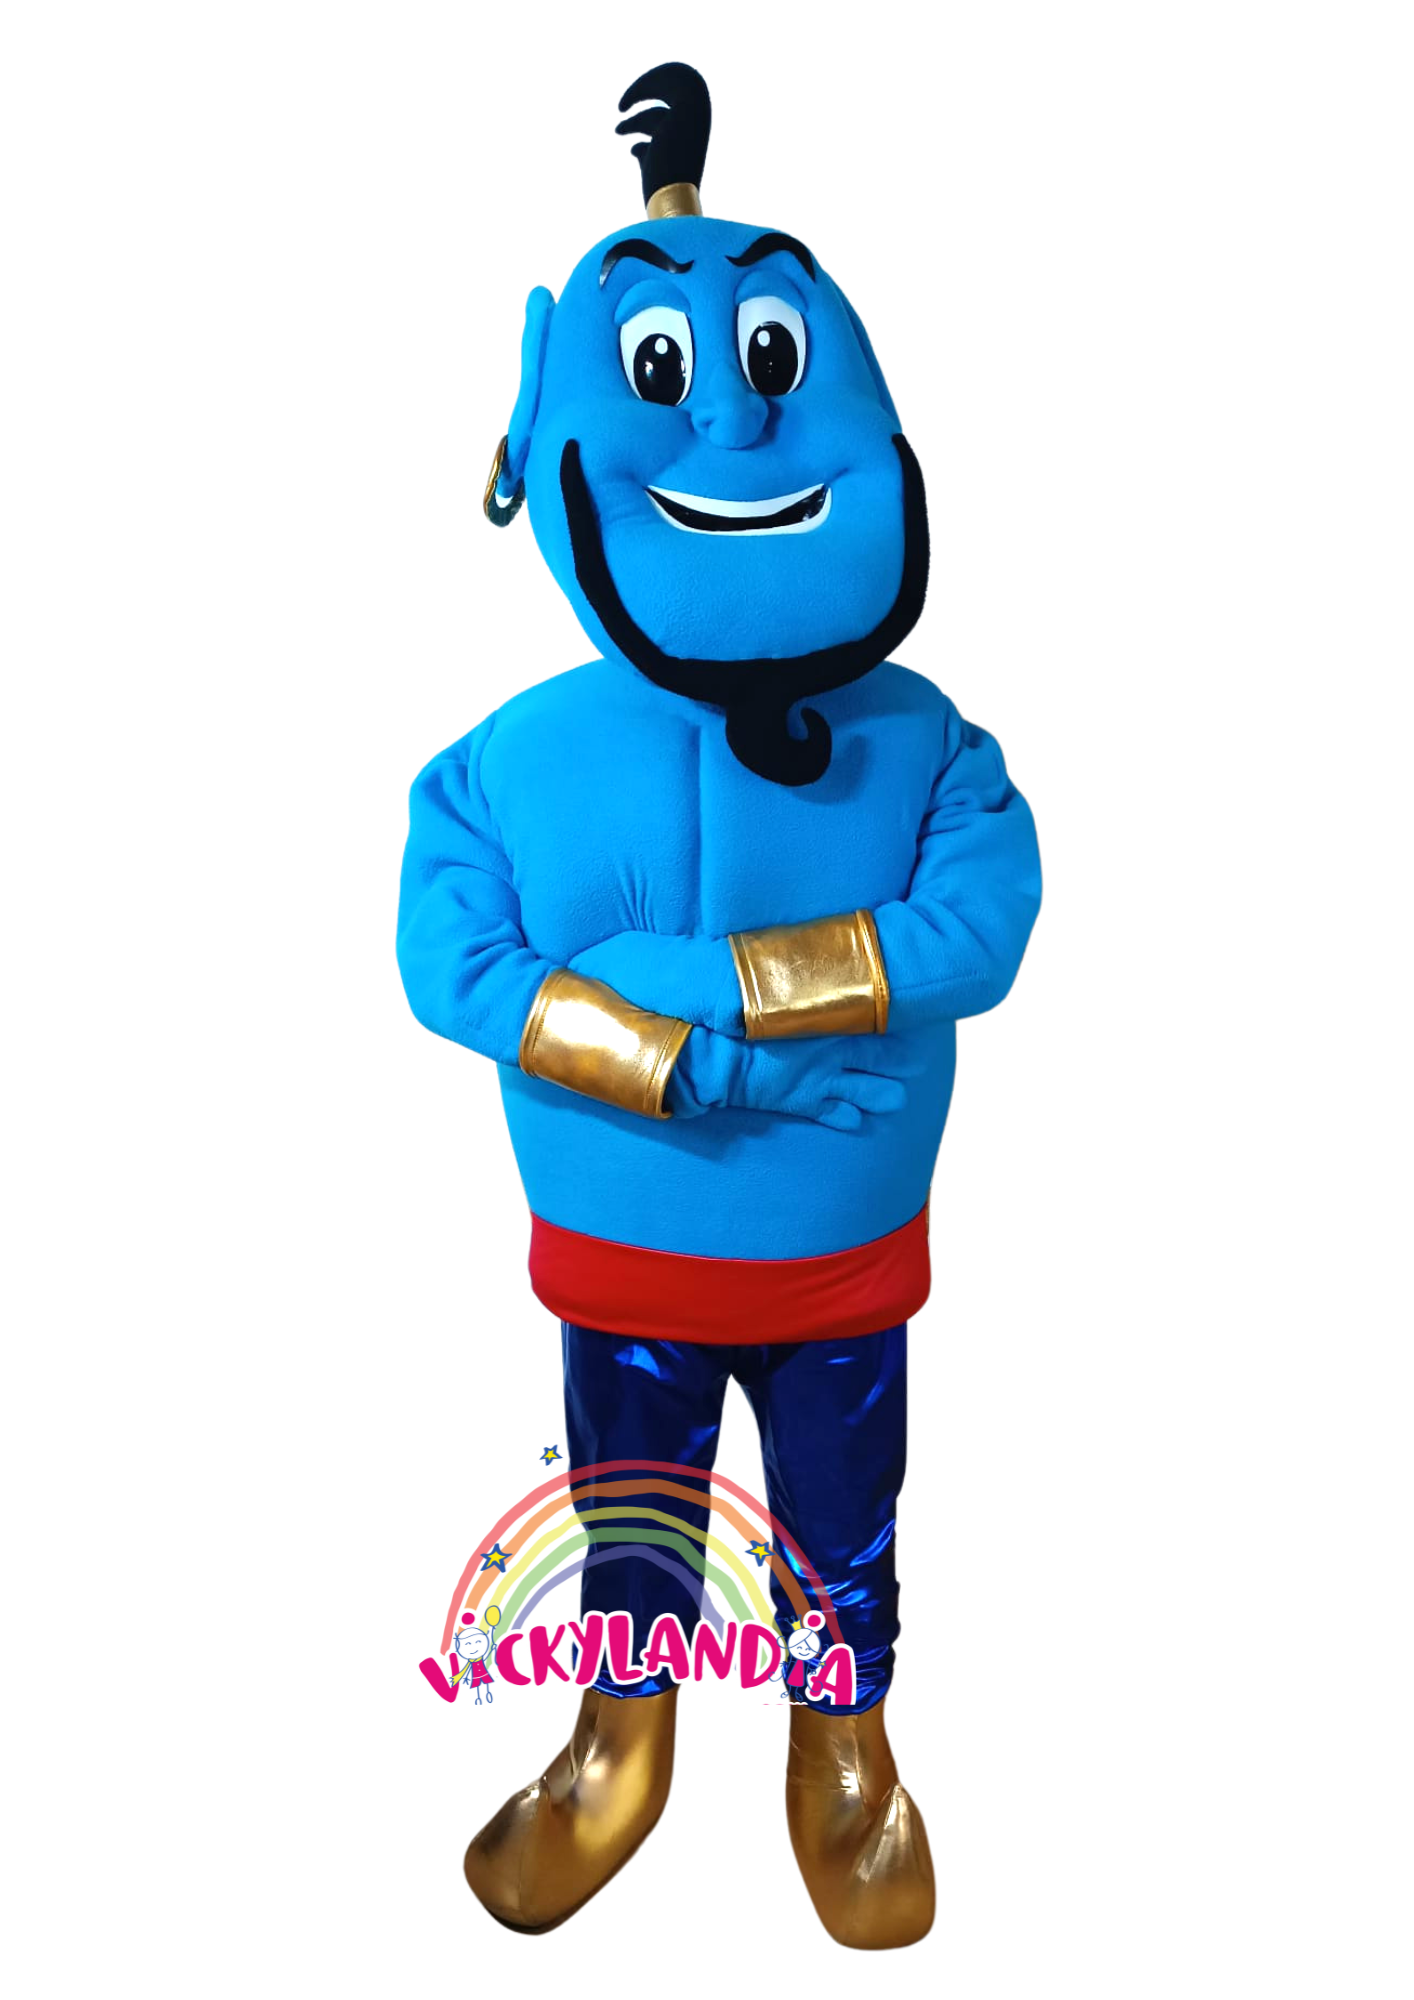 Descubre la magia de nuestro muñeco publicitario de Genio Azul en Vickylandia. Son disfraces cabezones perfectos para fiestas infantiles, shows, cumpleaños, estrategias publicitarias, espectáculos, cabalgatas y cualquier tipo de evento.